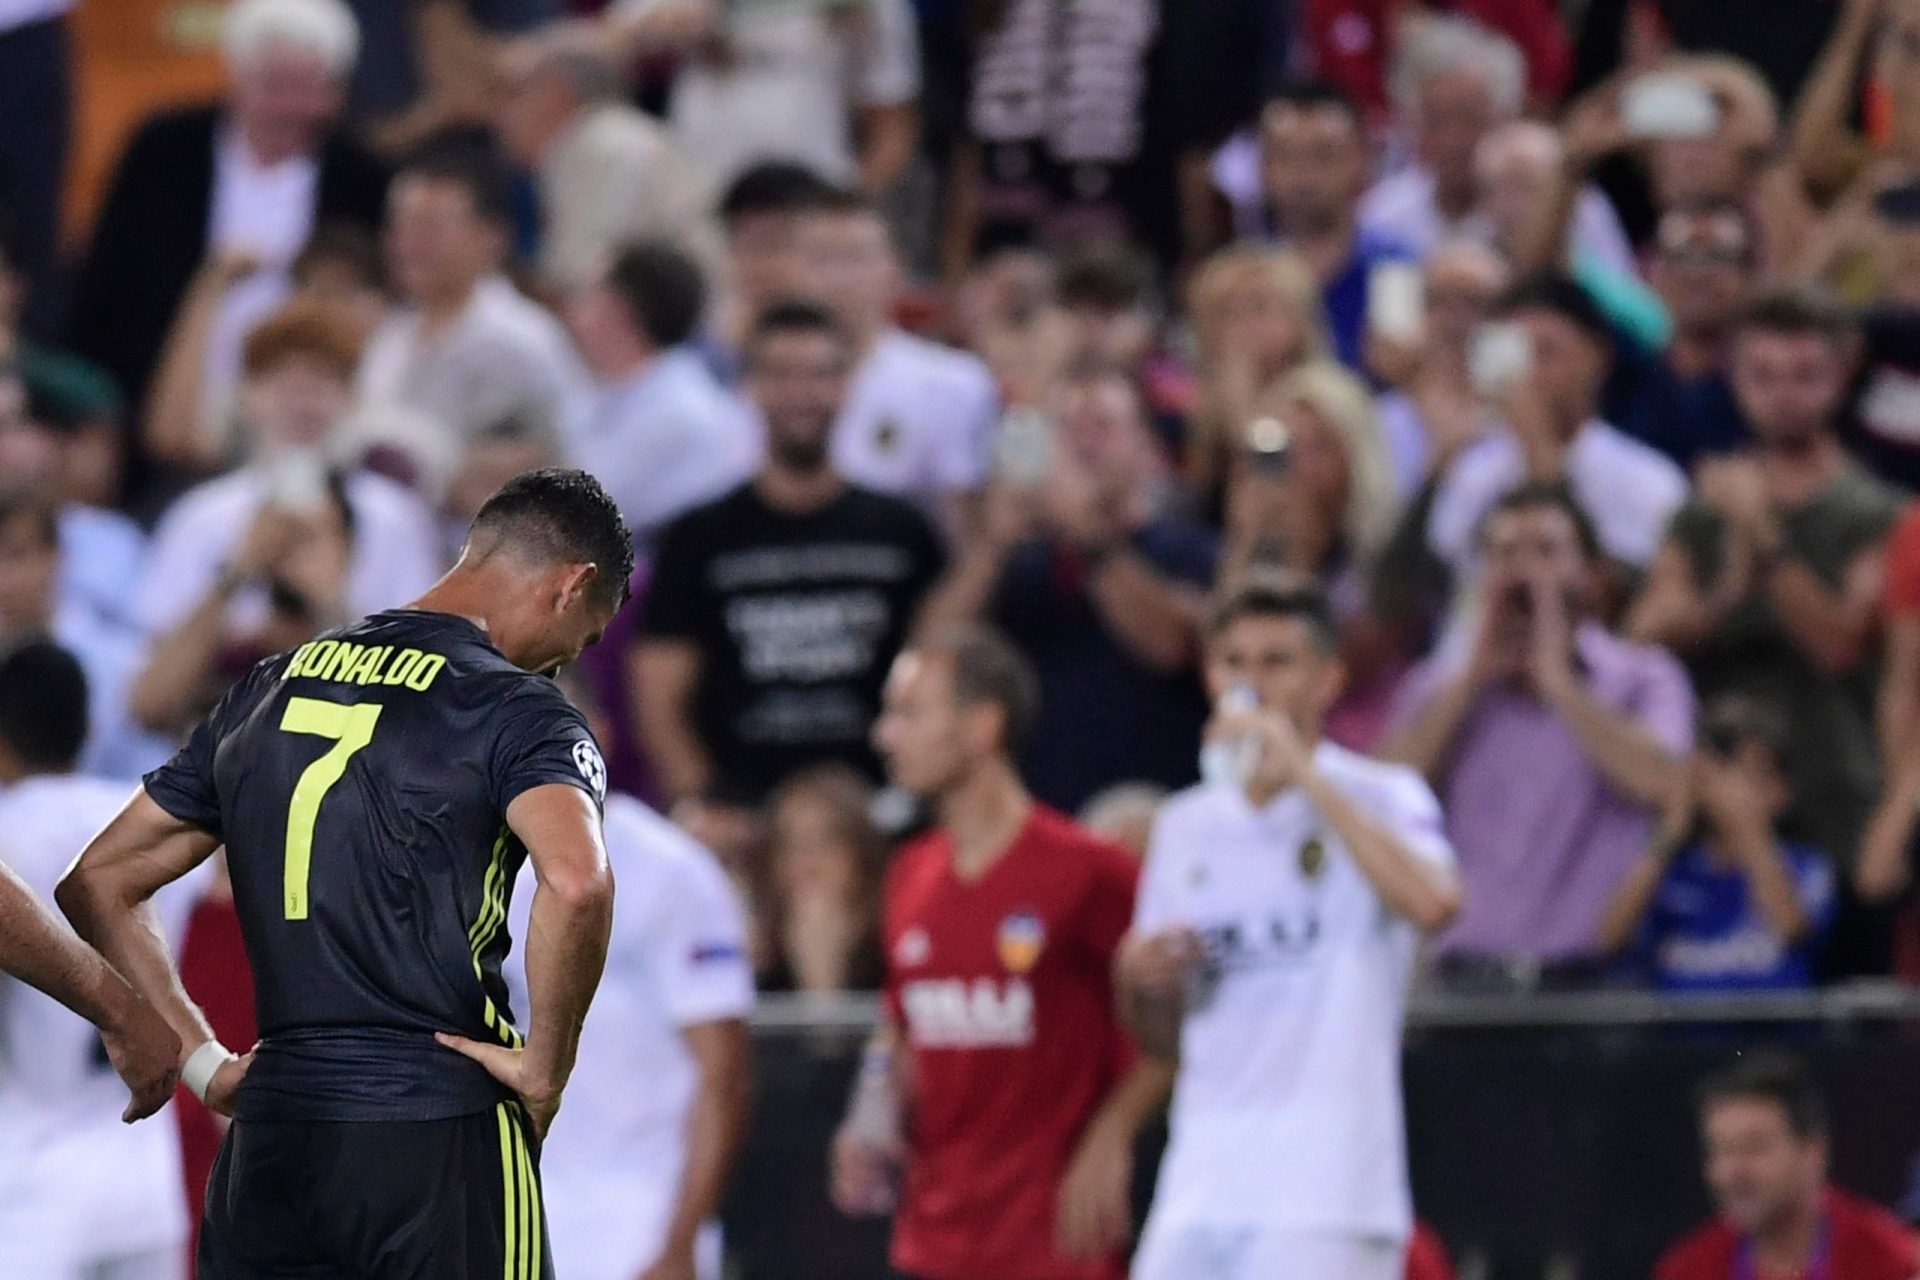 Ronaldo é expulso e deixa relvado em lágrimas | FOTOGALERIA